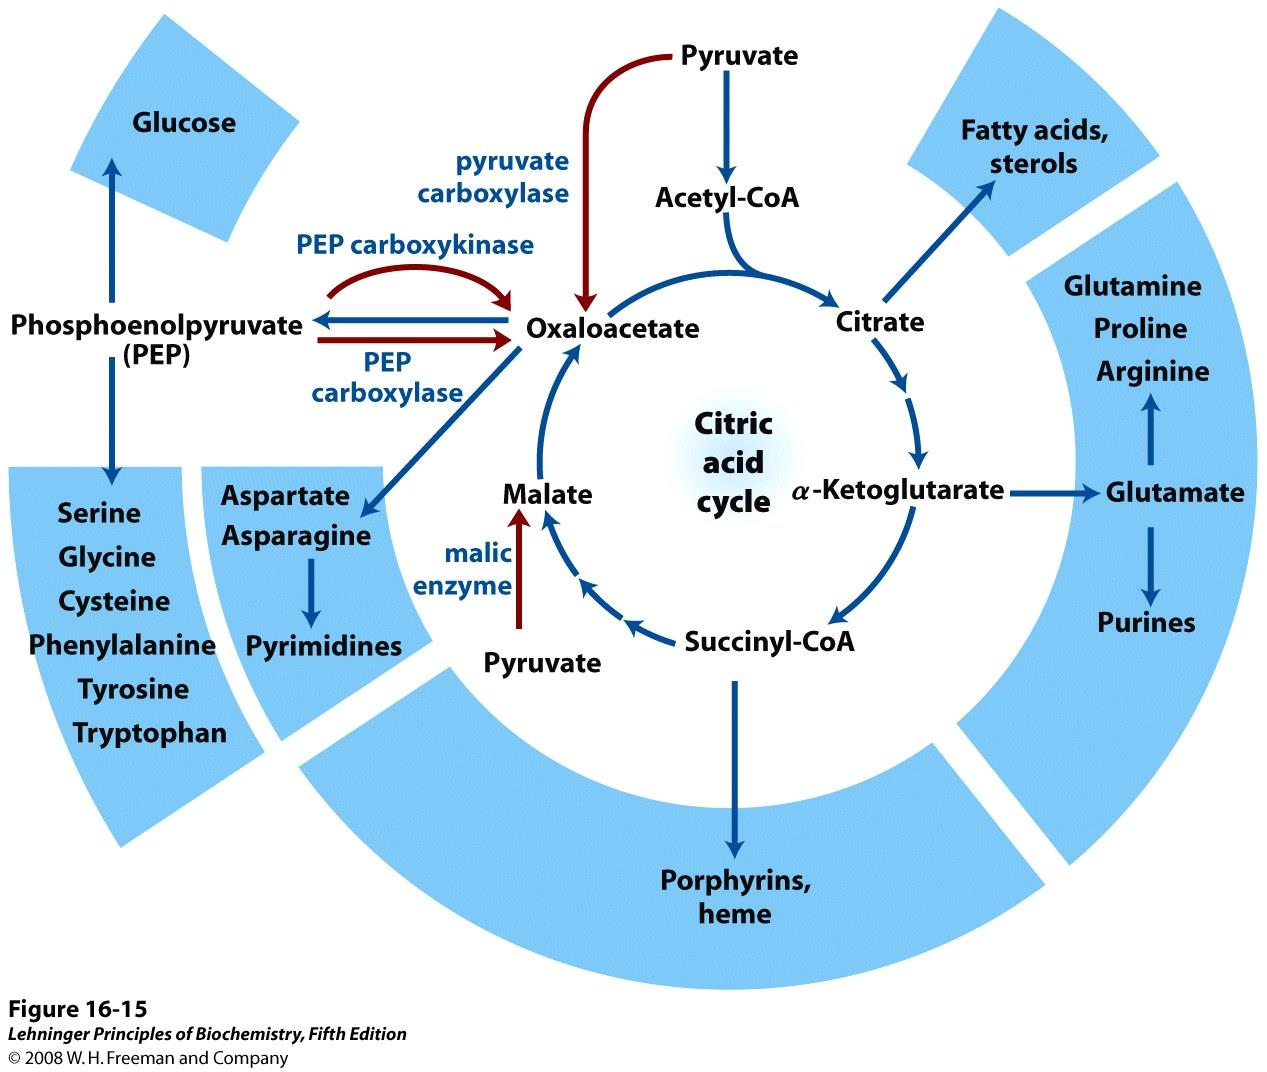 58 Mellomprodukter i sitronsyresyklus brukes som utgangspunkt for mange syntesereaksjoner.